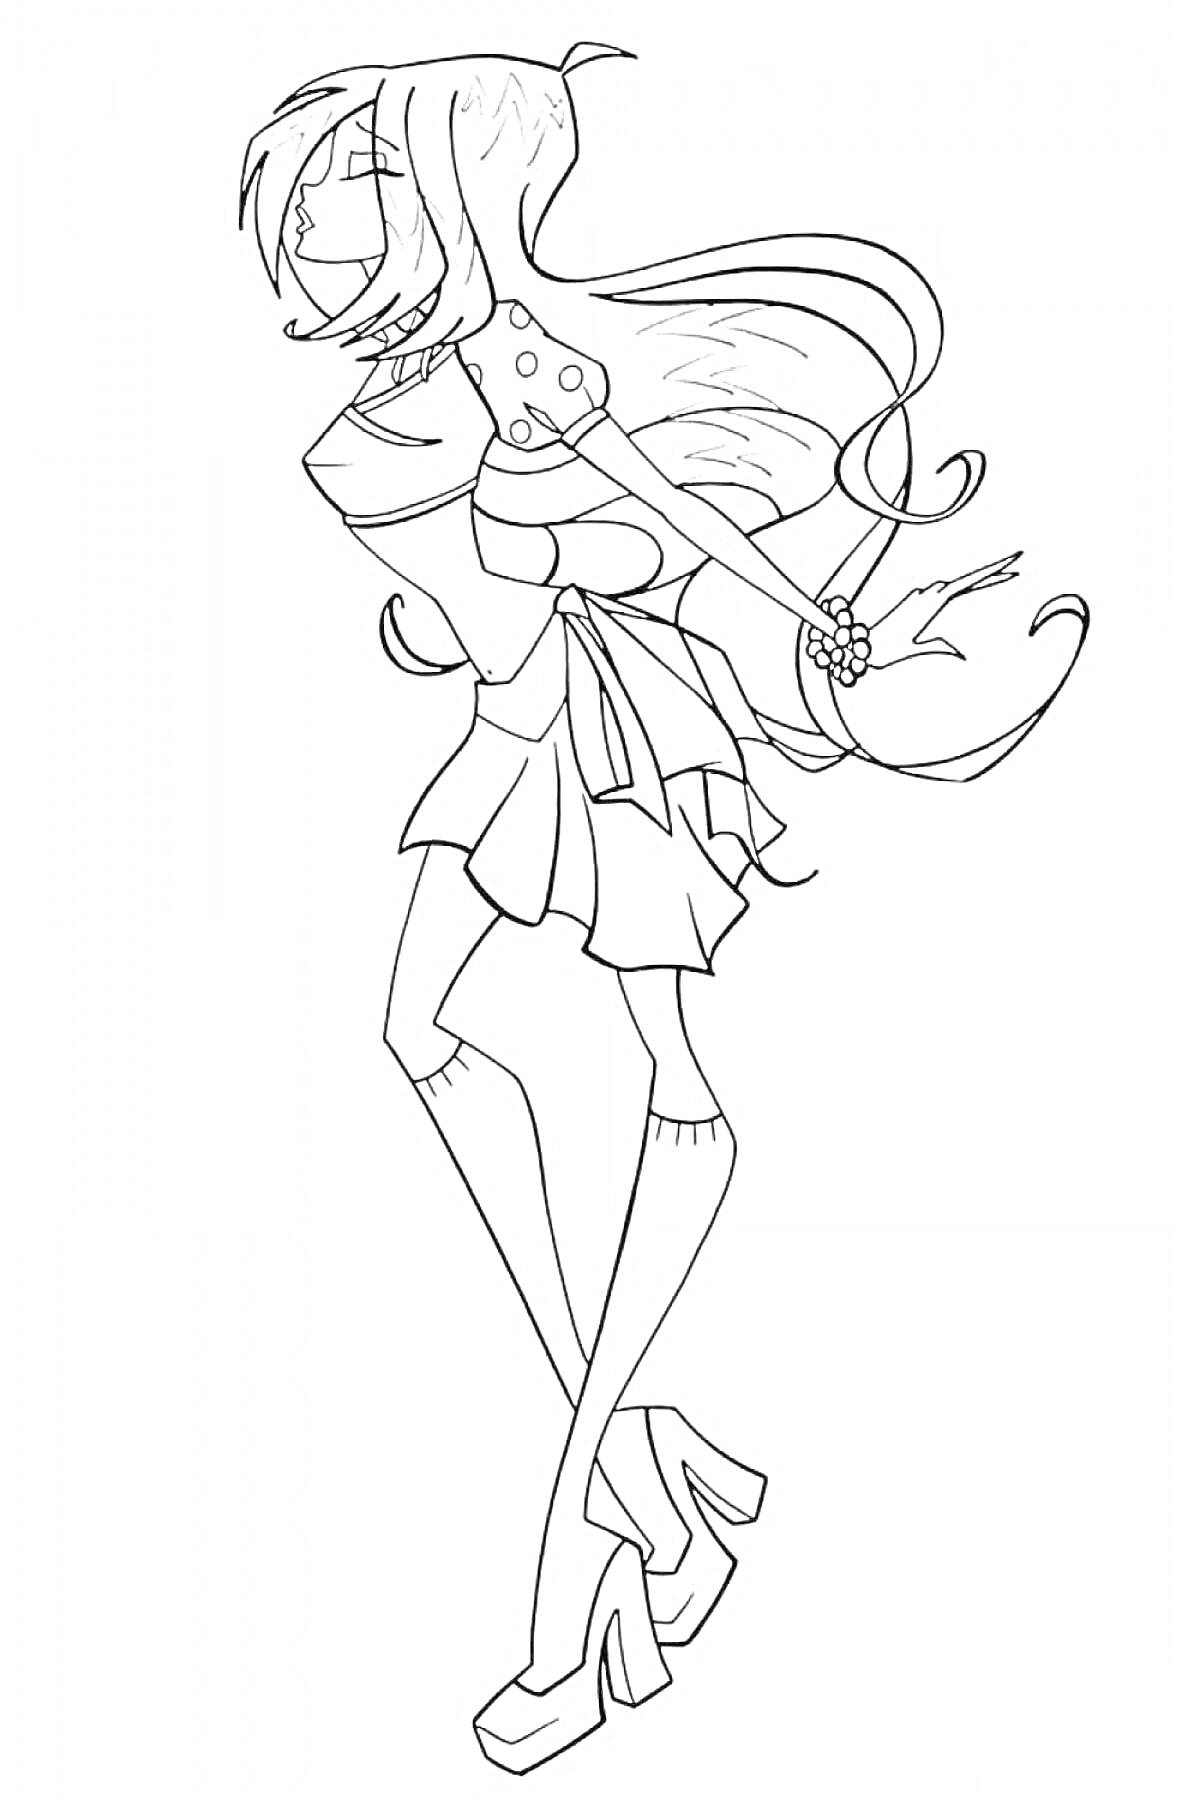 Девушка-маг с длинными волосами, в платье и на высоких каблуках, с цветочными украшениями на руке